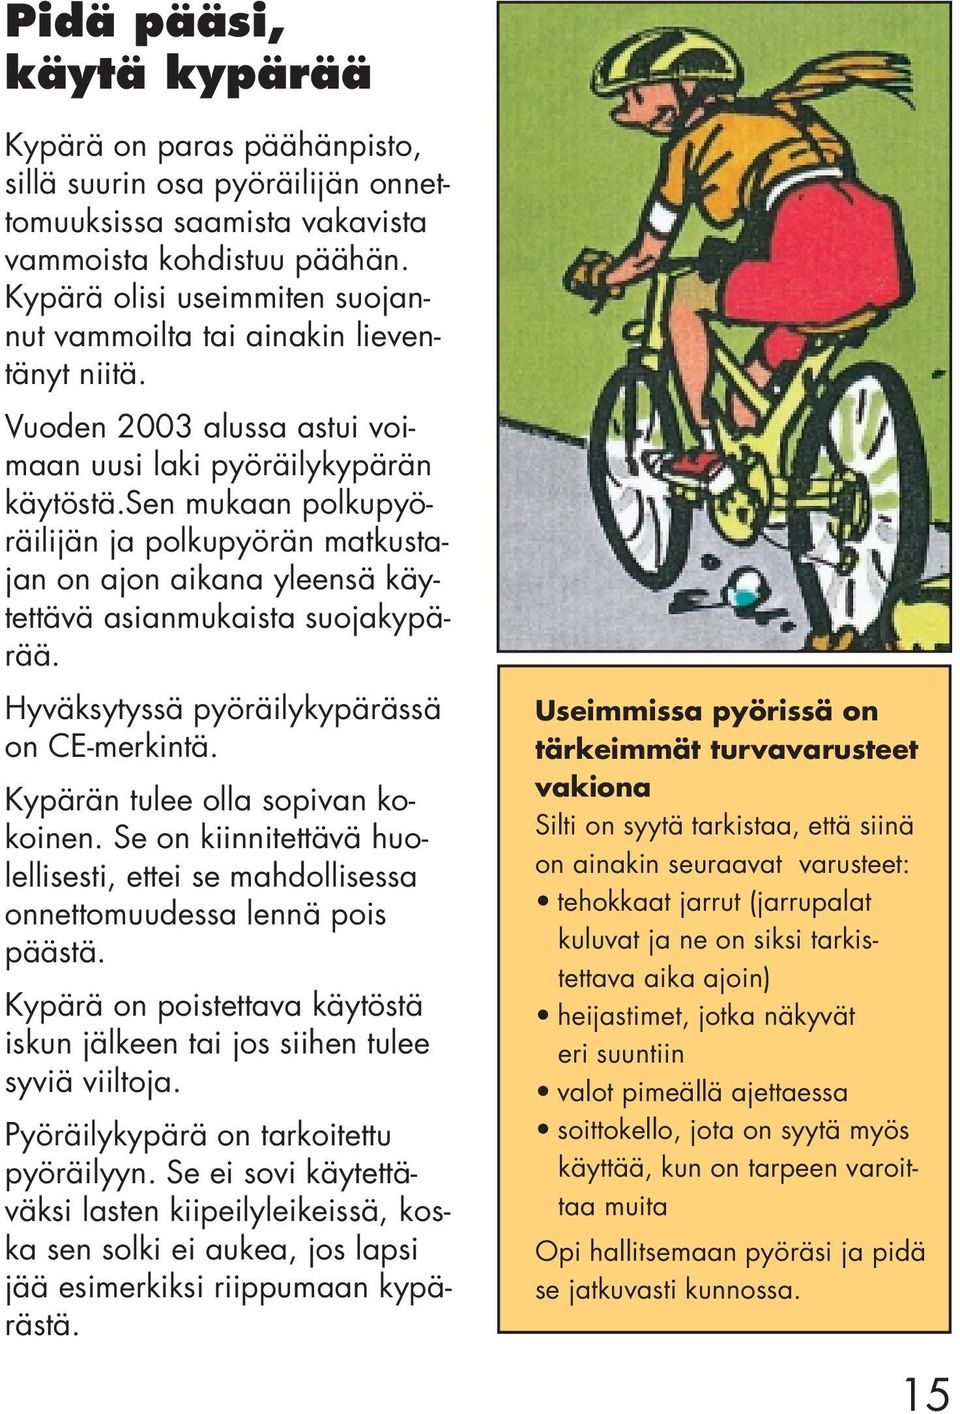 sen mukaan polkupyöräilijän ja polkupyörän matkustajan on ajon aikana yleensä käytettävä asianmukaista suojakypärää. Hyväksytyssä pyöräilykypärässä on CE-merkintä. Kypärän tulee olla sopivan kokoinen.